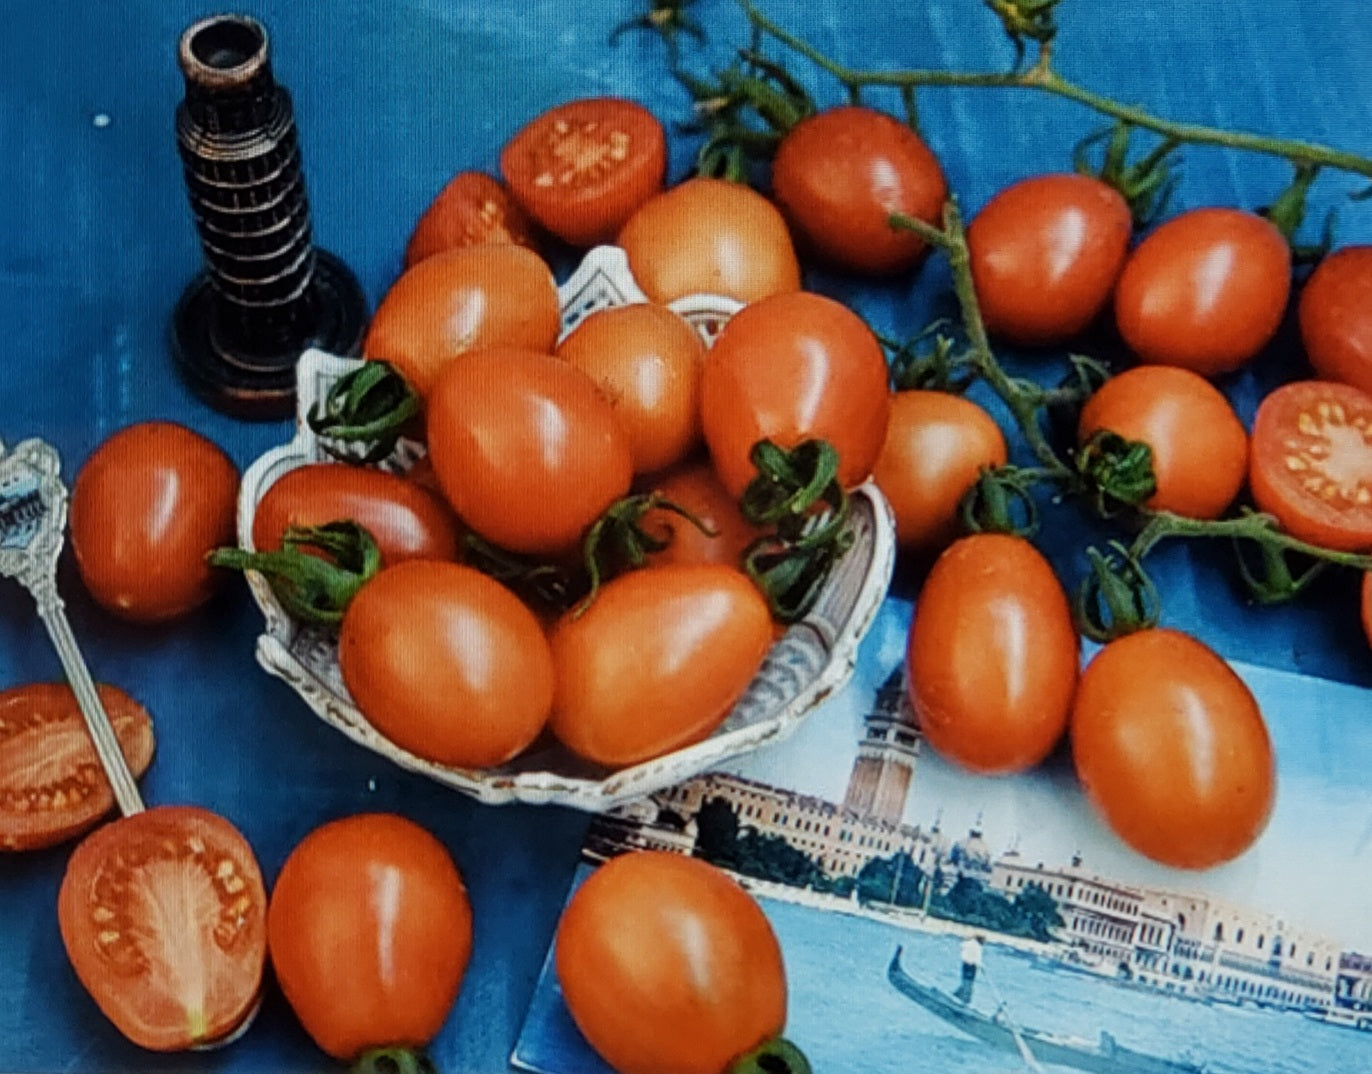 Tomato--Grappoli D'Inverno